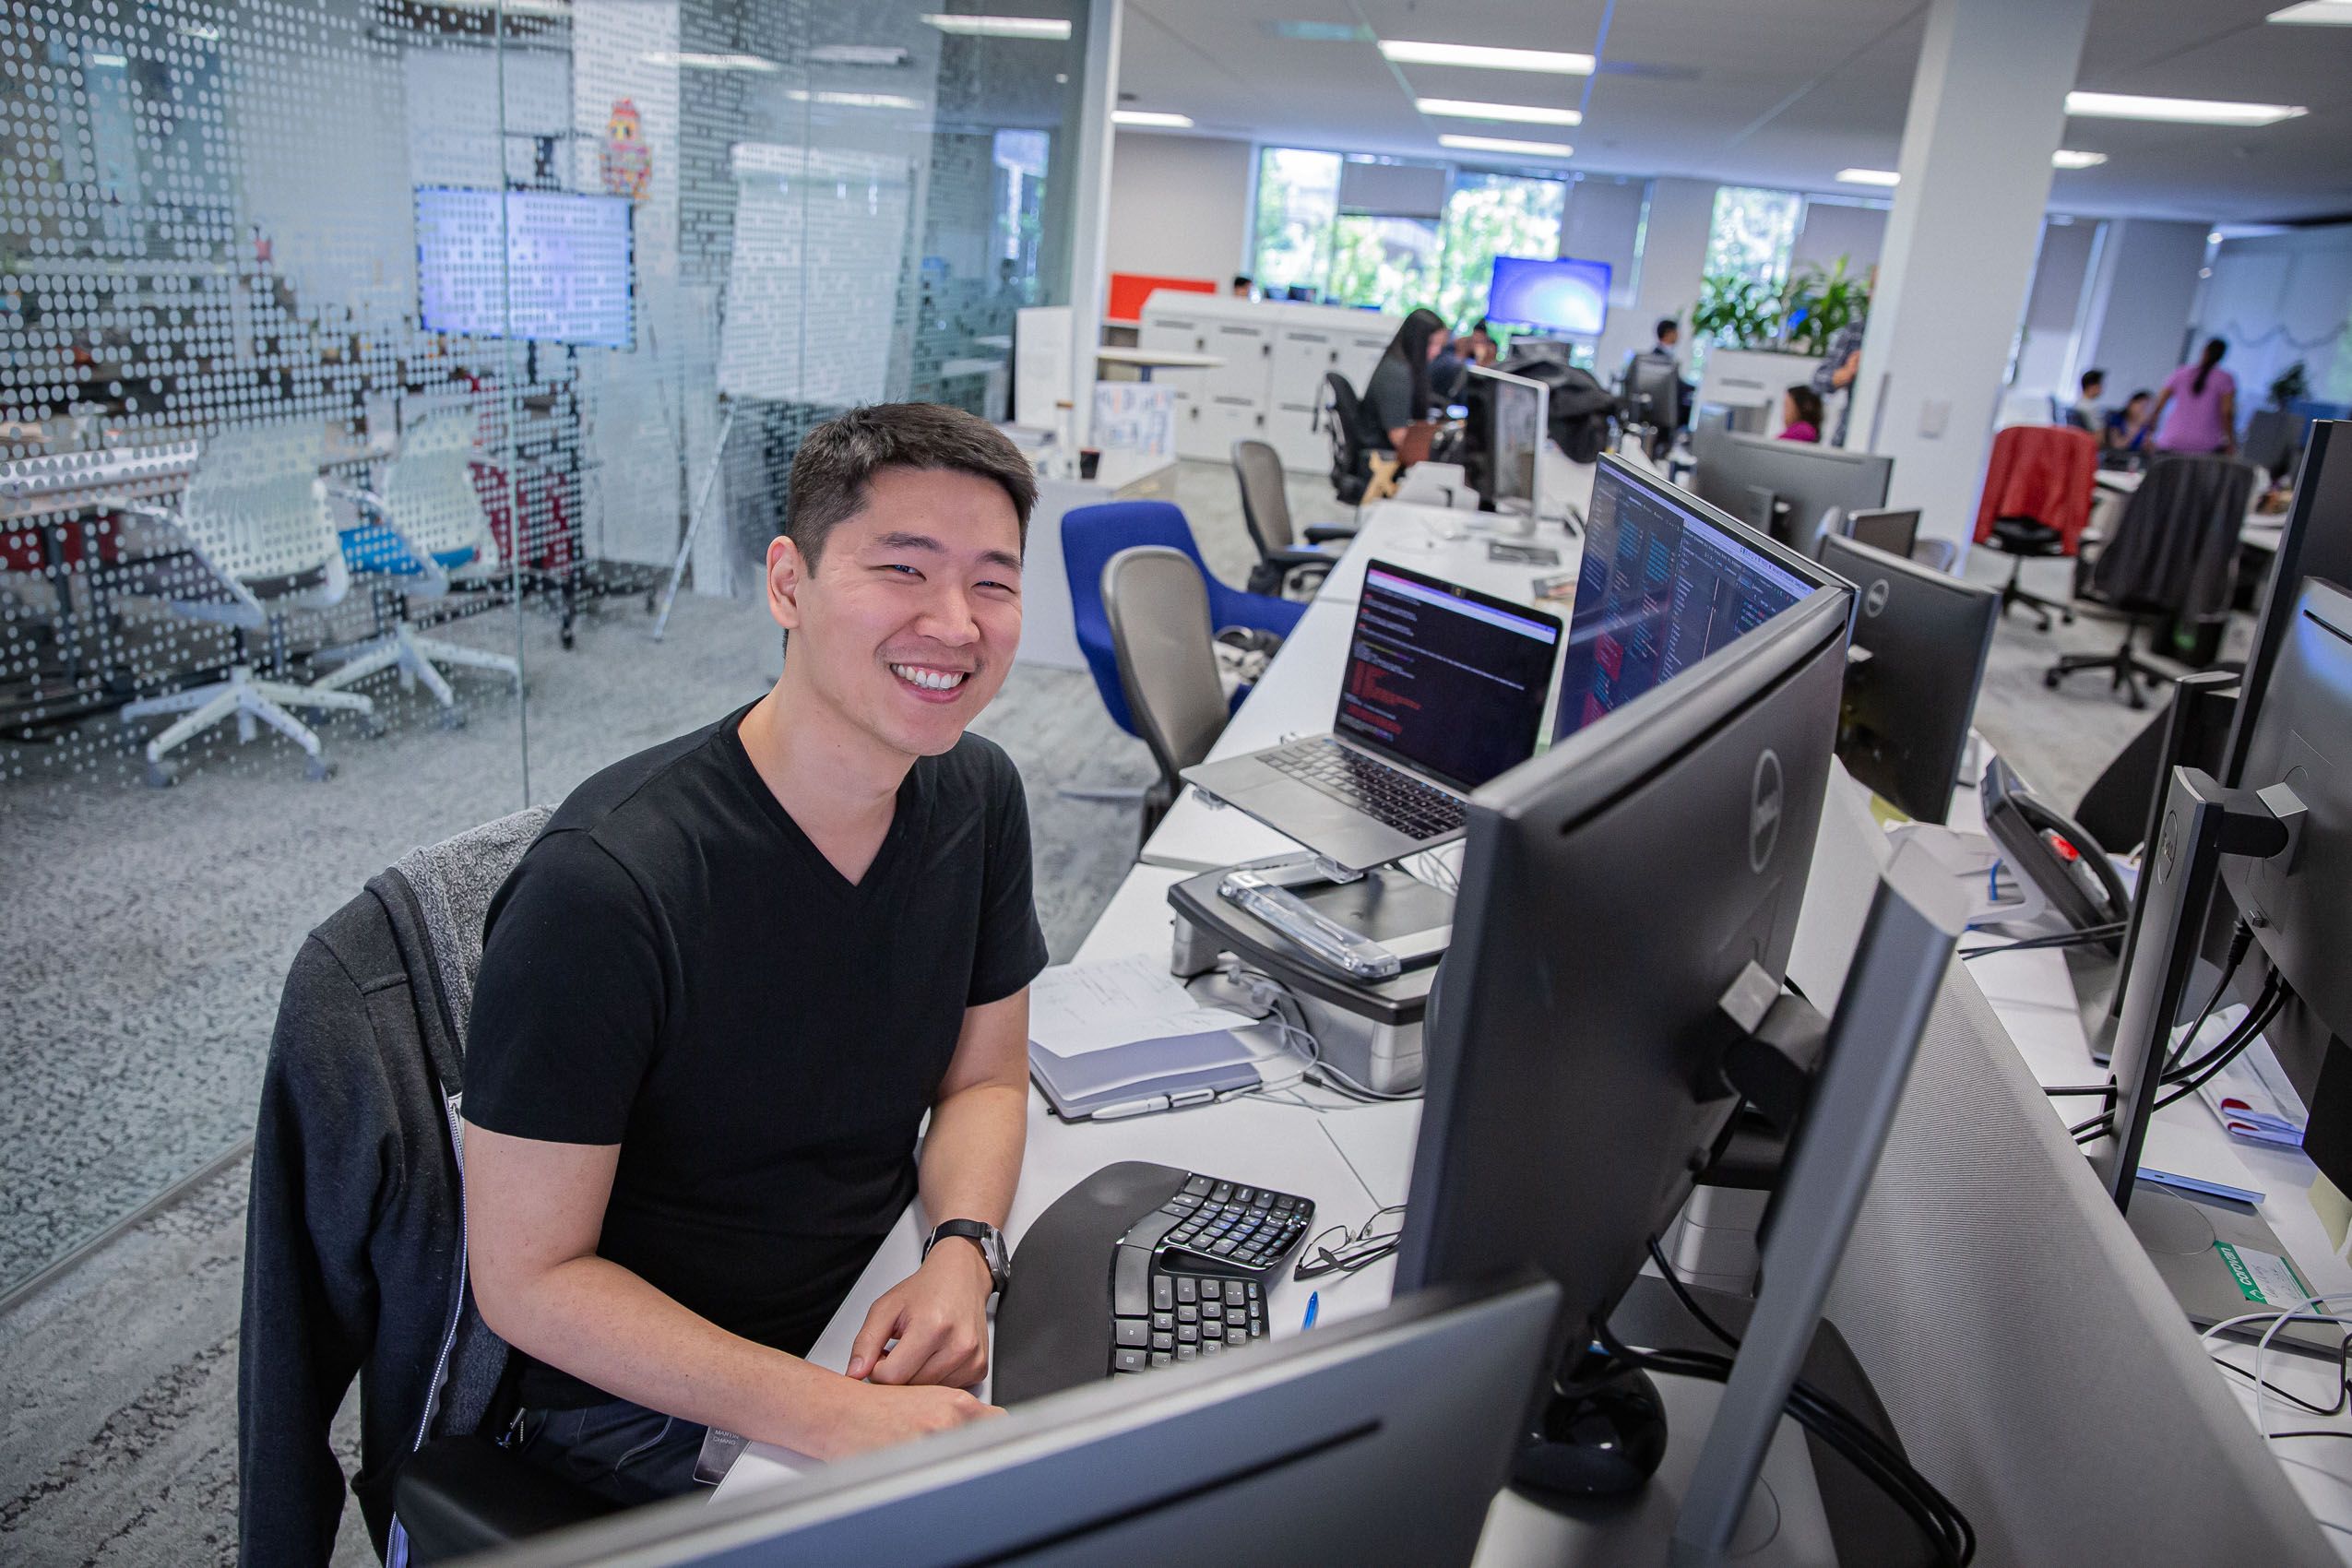 Man Smiling at Office Desk